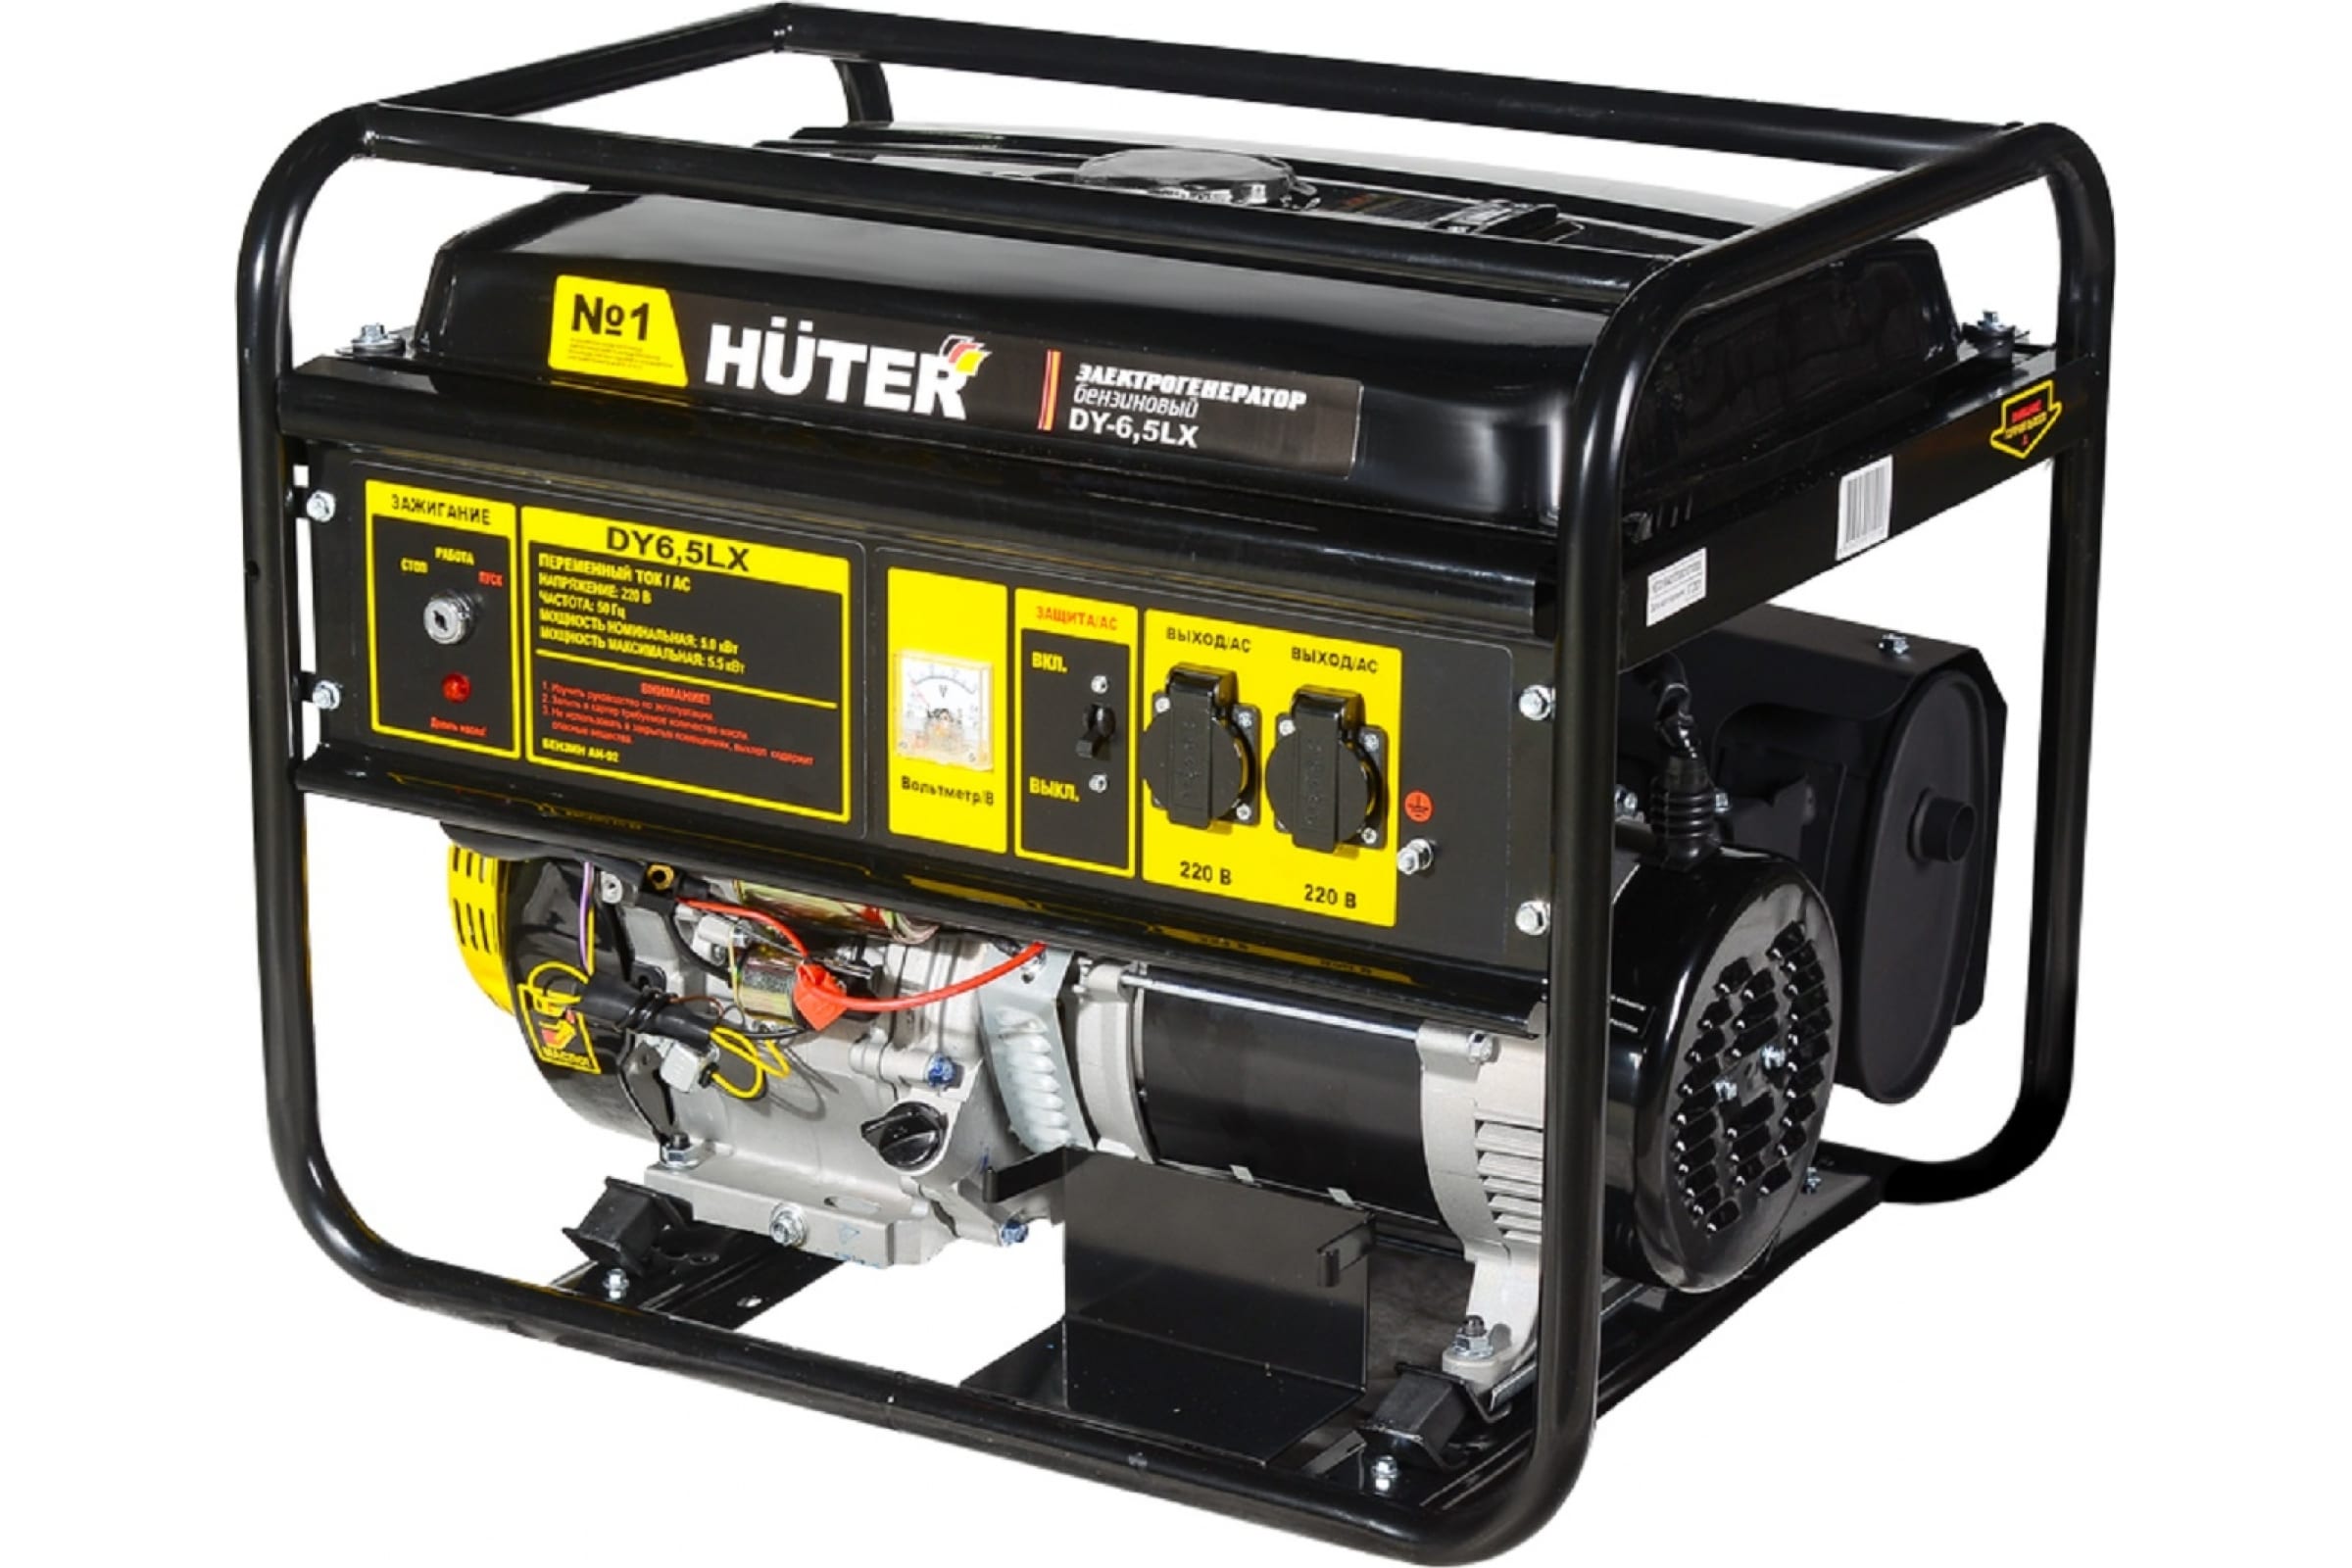 Генератор Huter DY6,5LX-электростартер газовая электростанция huter